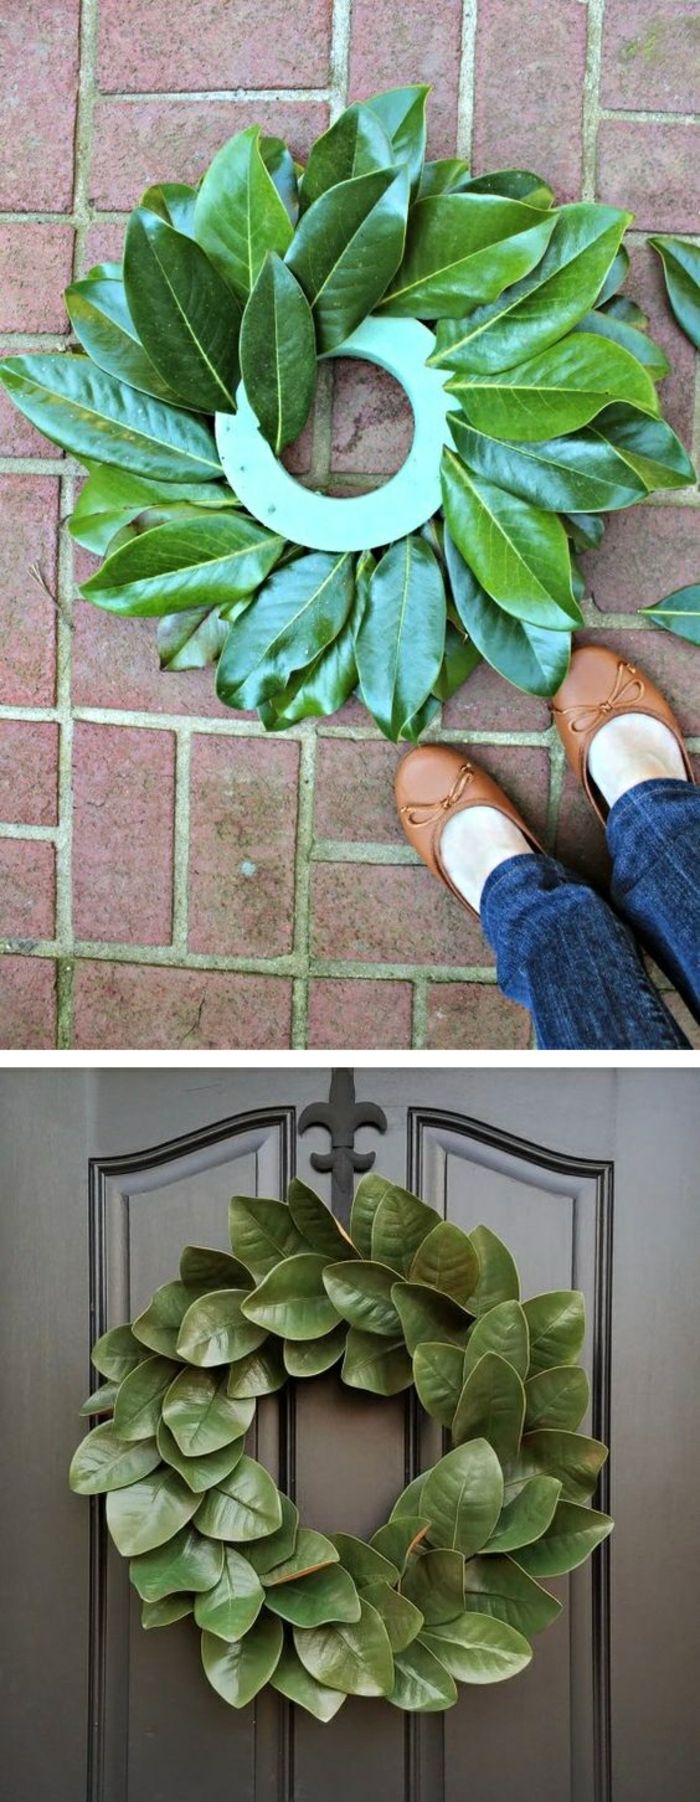 zrobić z liśćmi, zrobić same drzwi, zielone liście, dekoracja drzwi